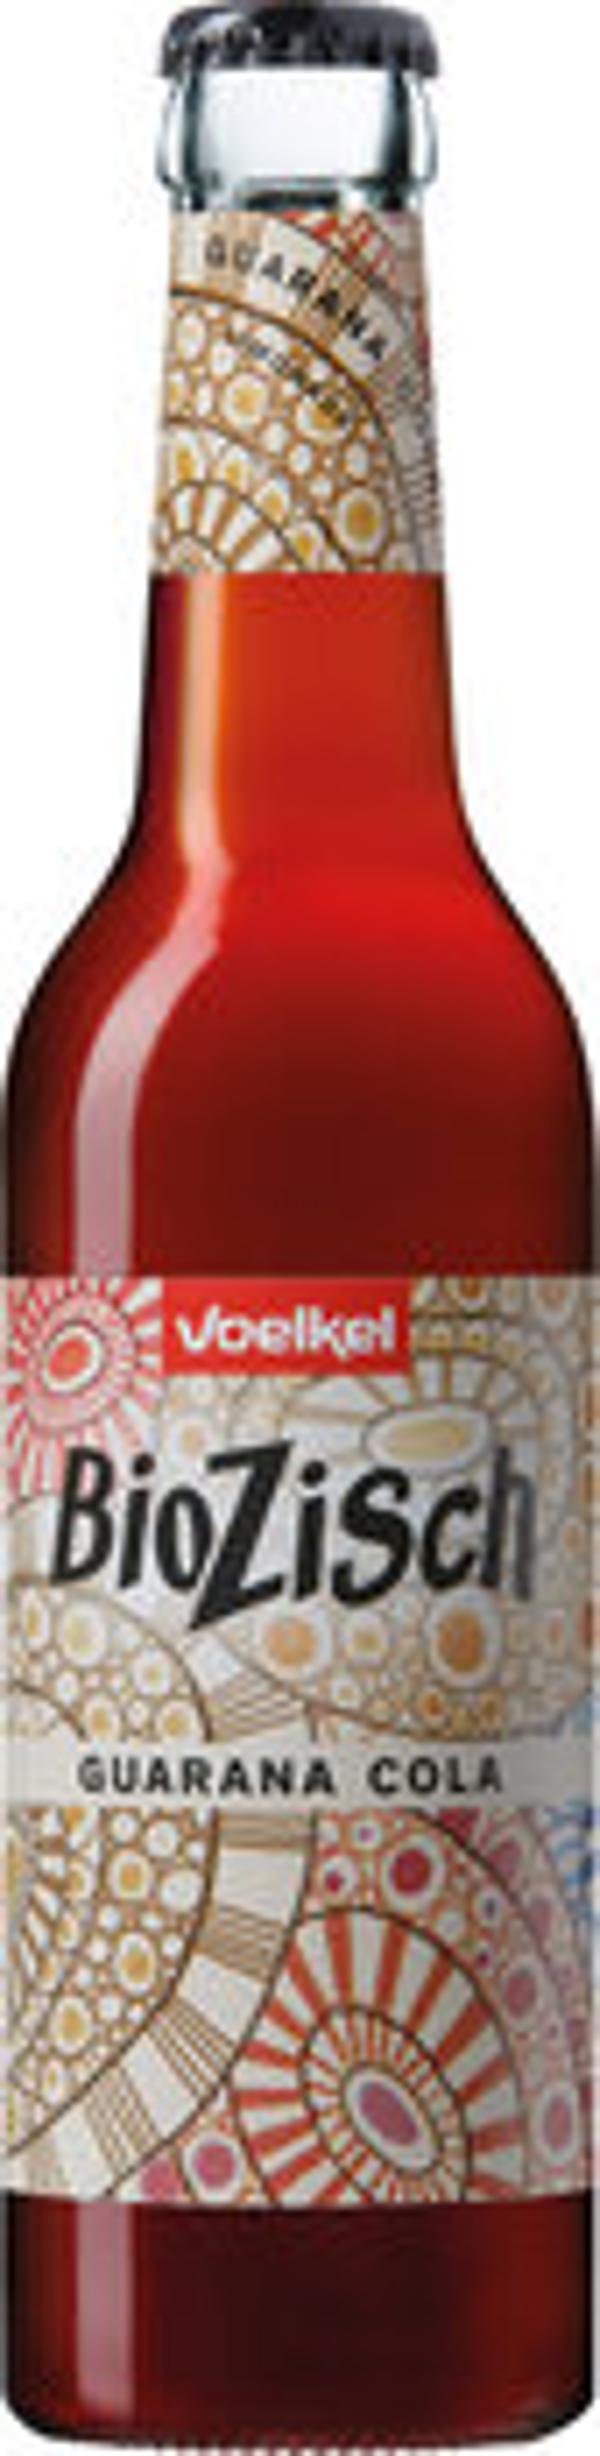 Produktfoto zu BioZisch Guarana Cola, 0,33l